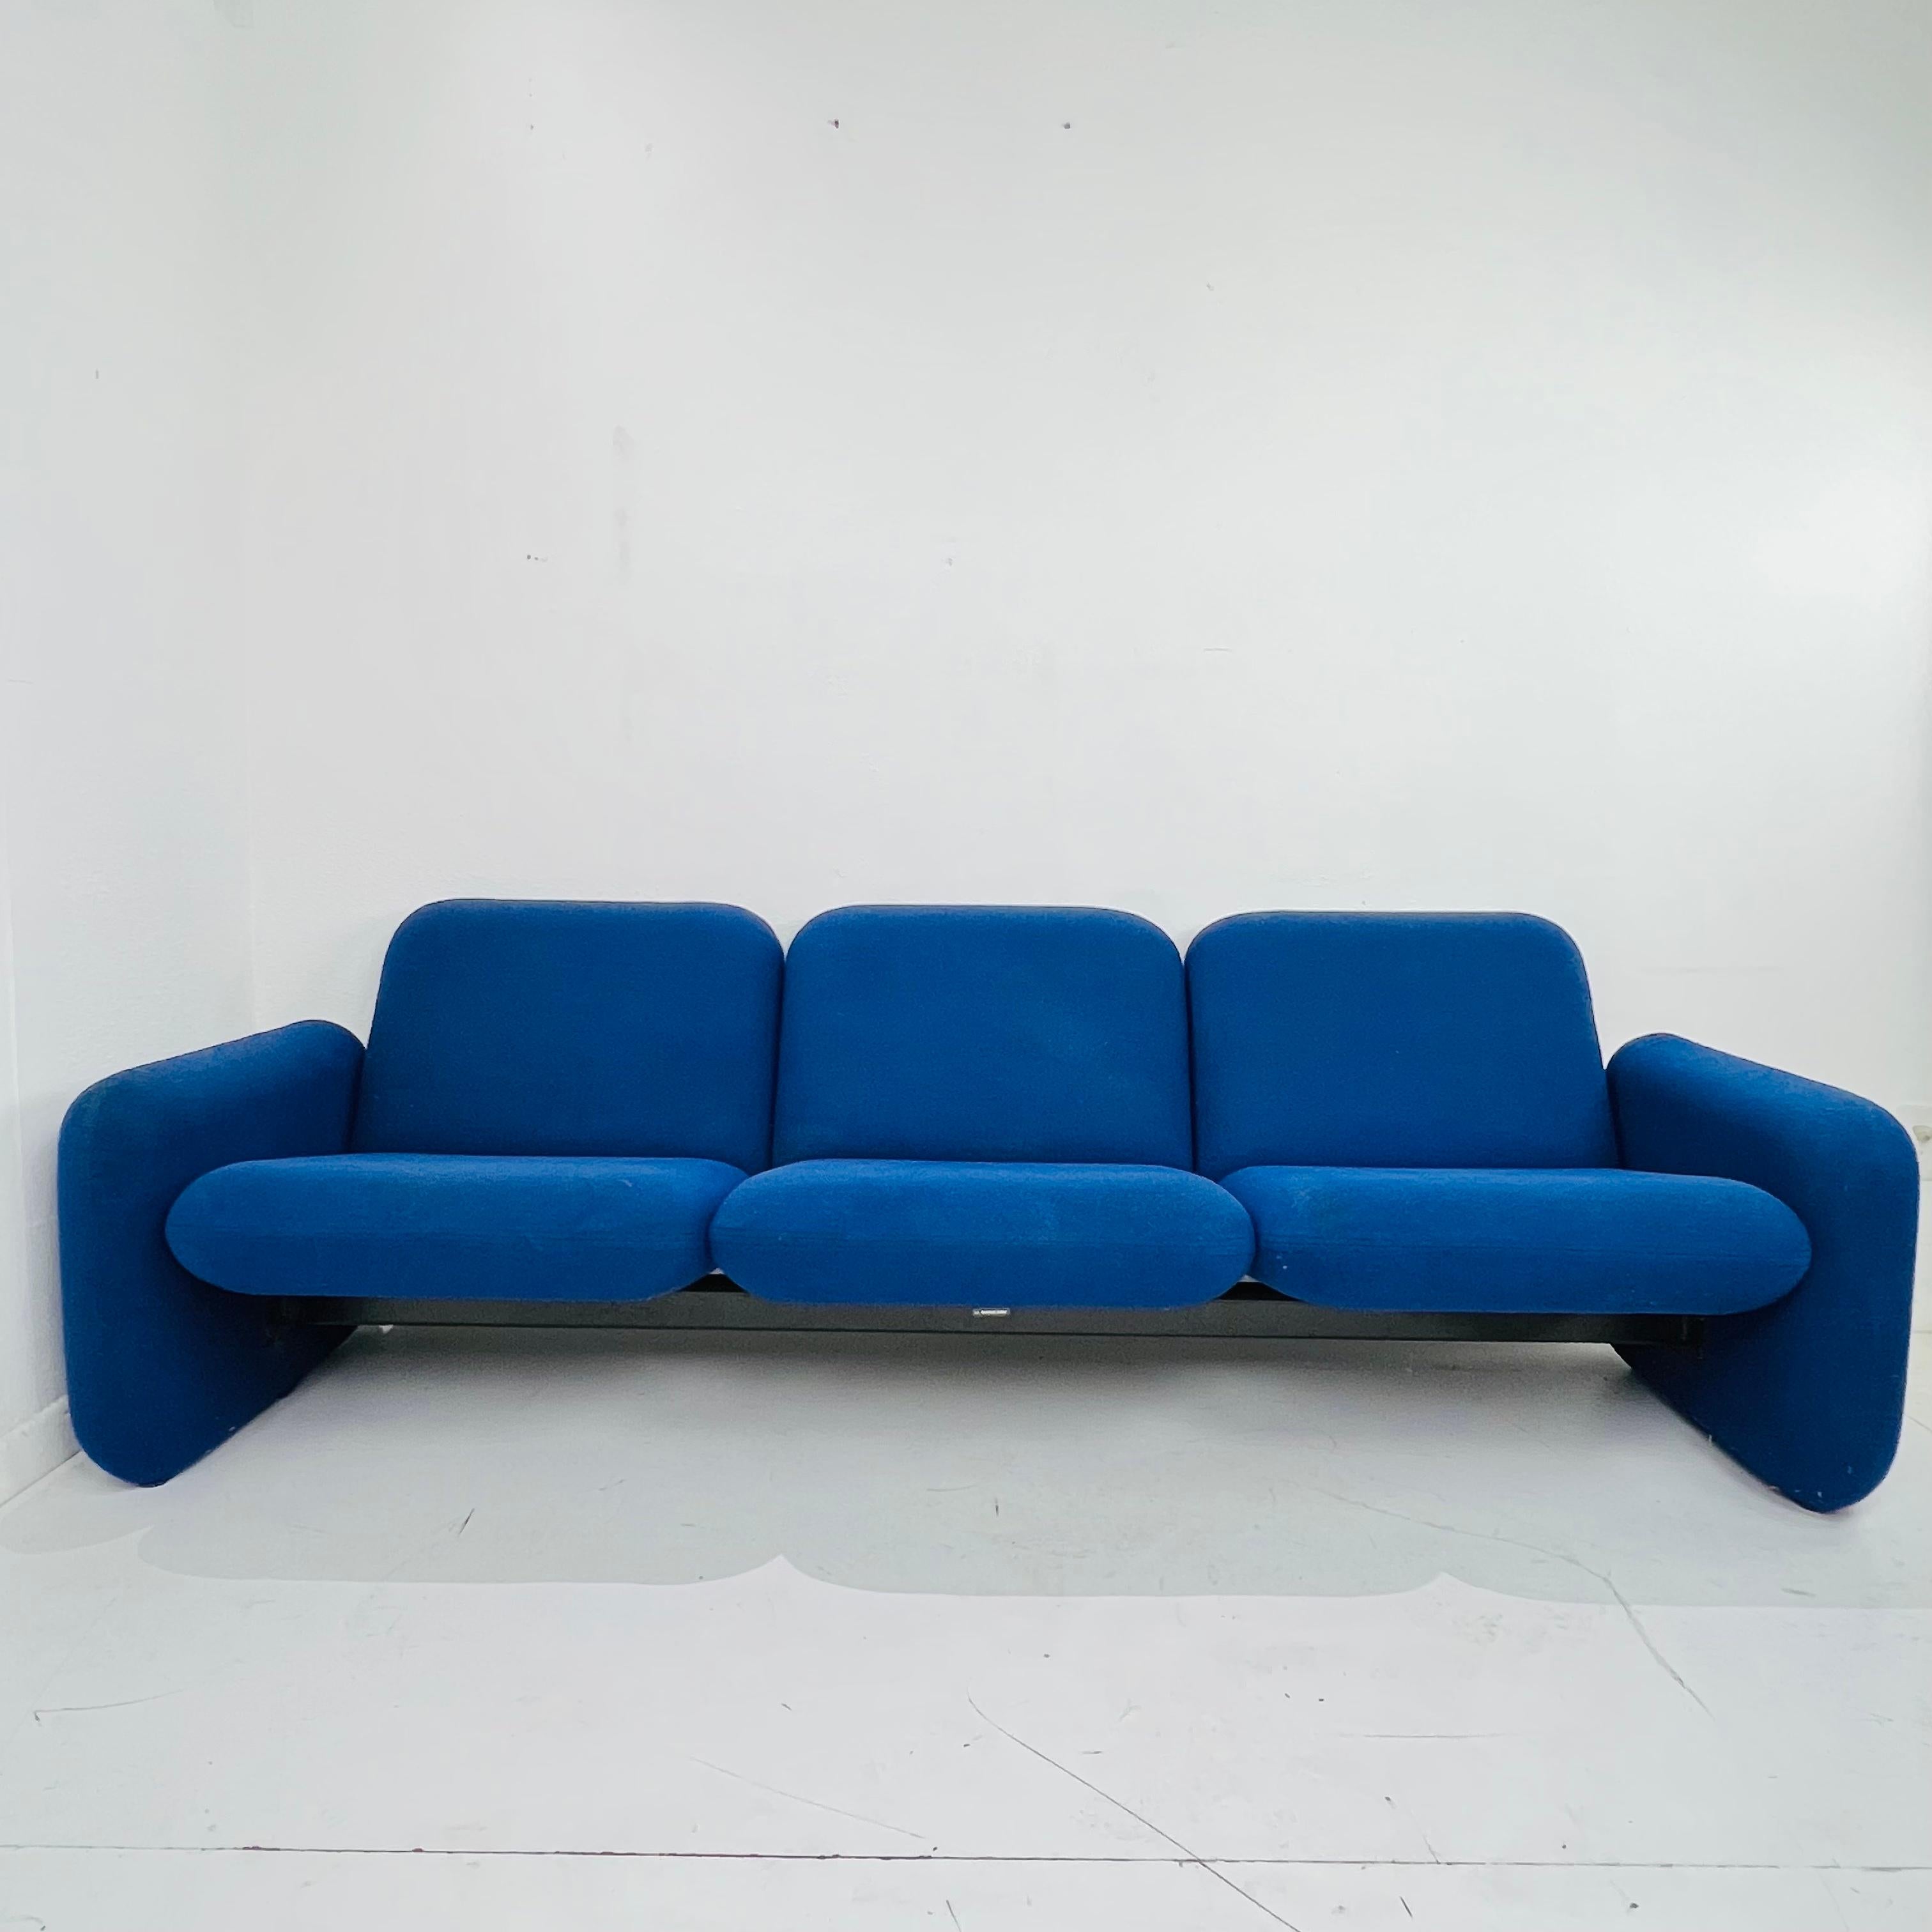 Dieses von Ray Wilkes für Herman Miller entworfene und 1976 erstmals vorgestellte modulare Sofa hinterließ einen bleibenden Eindruck mit seinen kühnen Kissen mit abgerundeten Kanten und den Stahlbügeln, die Sitz und Rückenlehne miteinander verbinden